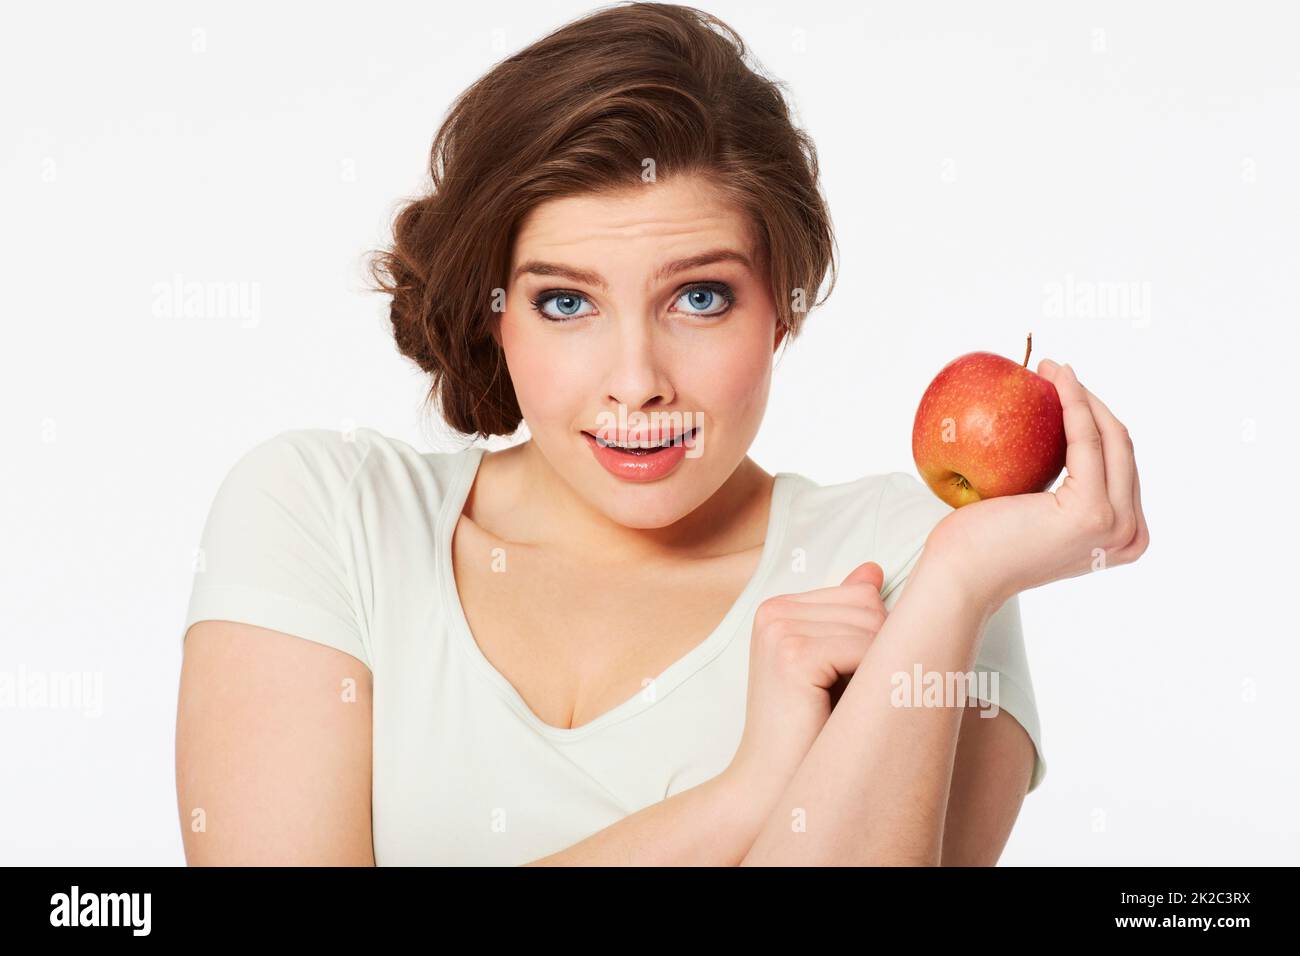 Le choix sain. Portrait d'une jolie femme brune tenant une pomme rouge. Banque D'Images